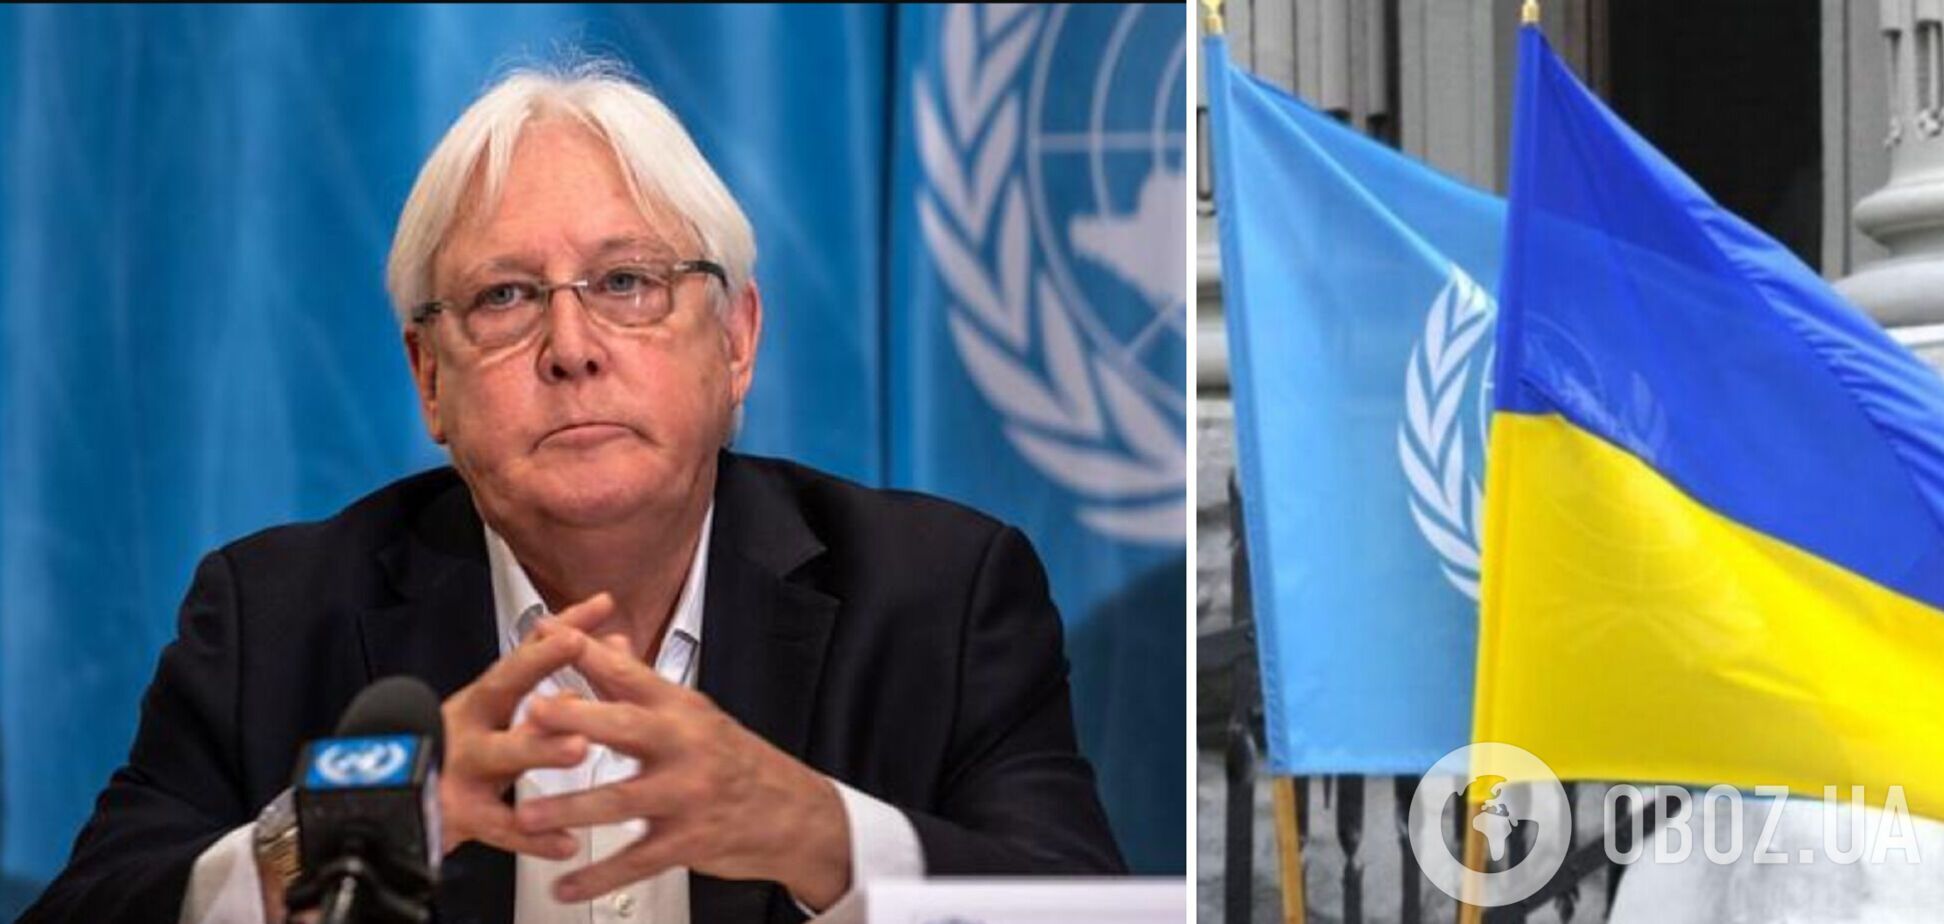 ООН возобновила работу офиса в Киеве: возможна встреча с представителями РФ по гуманитарным вопросам